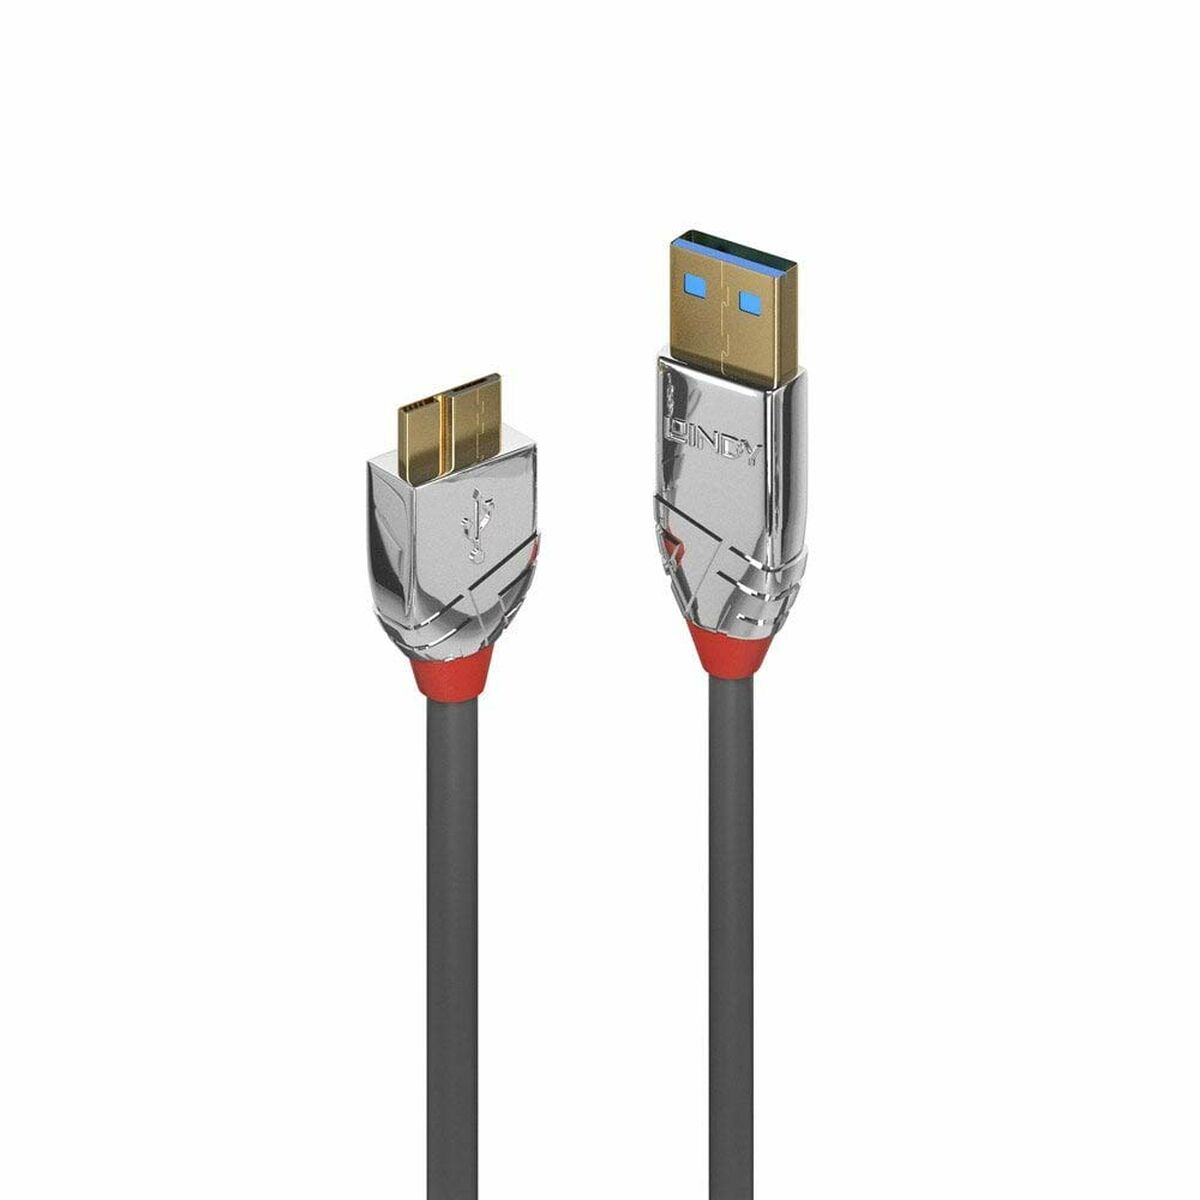 Osta tuote Kaapeli Micro USB LINDY 36658 Harmaa verkkokaupastamme Korhone: Urheilu & Vapaa-aika 20% alennuksella koodilla VIIKONLOPPU